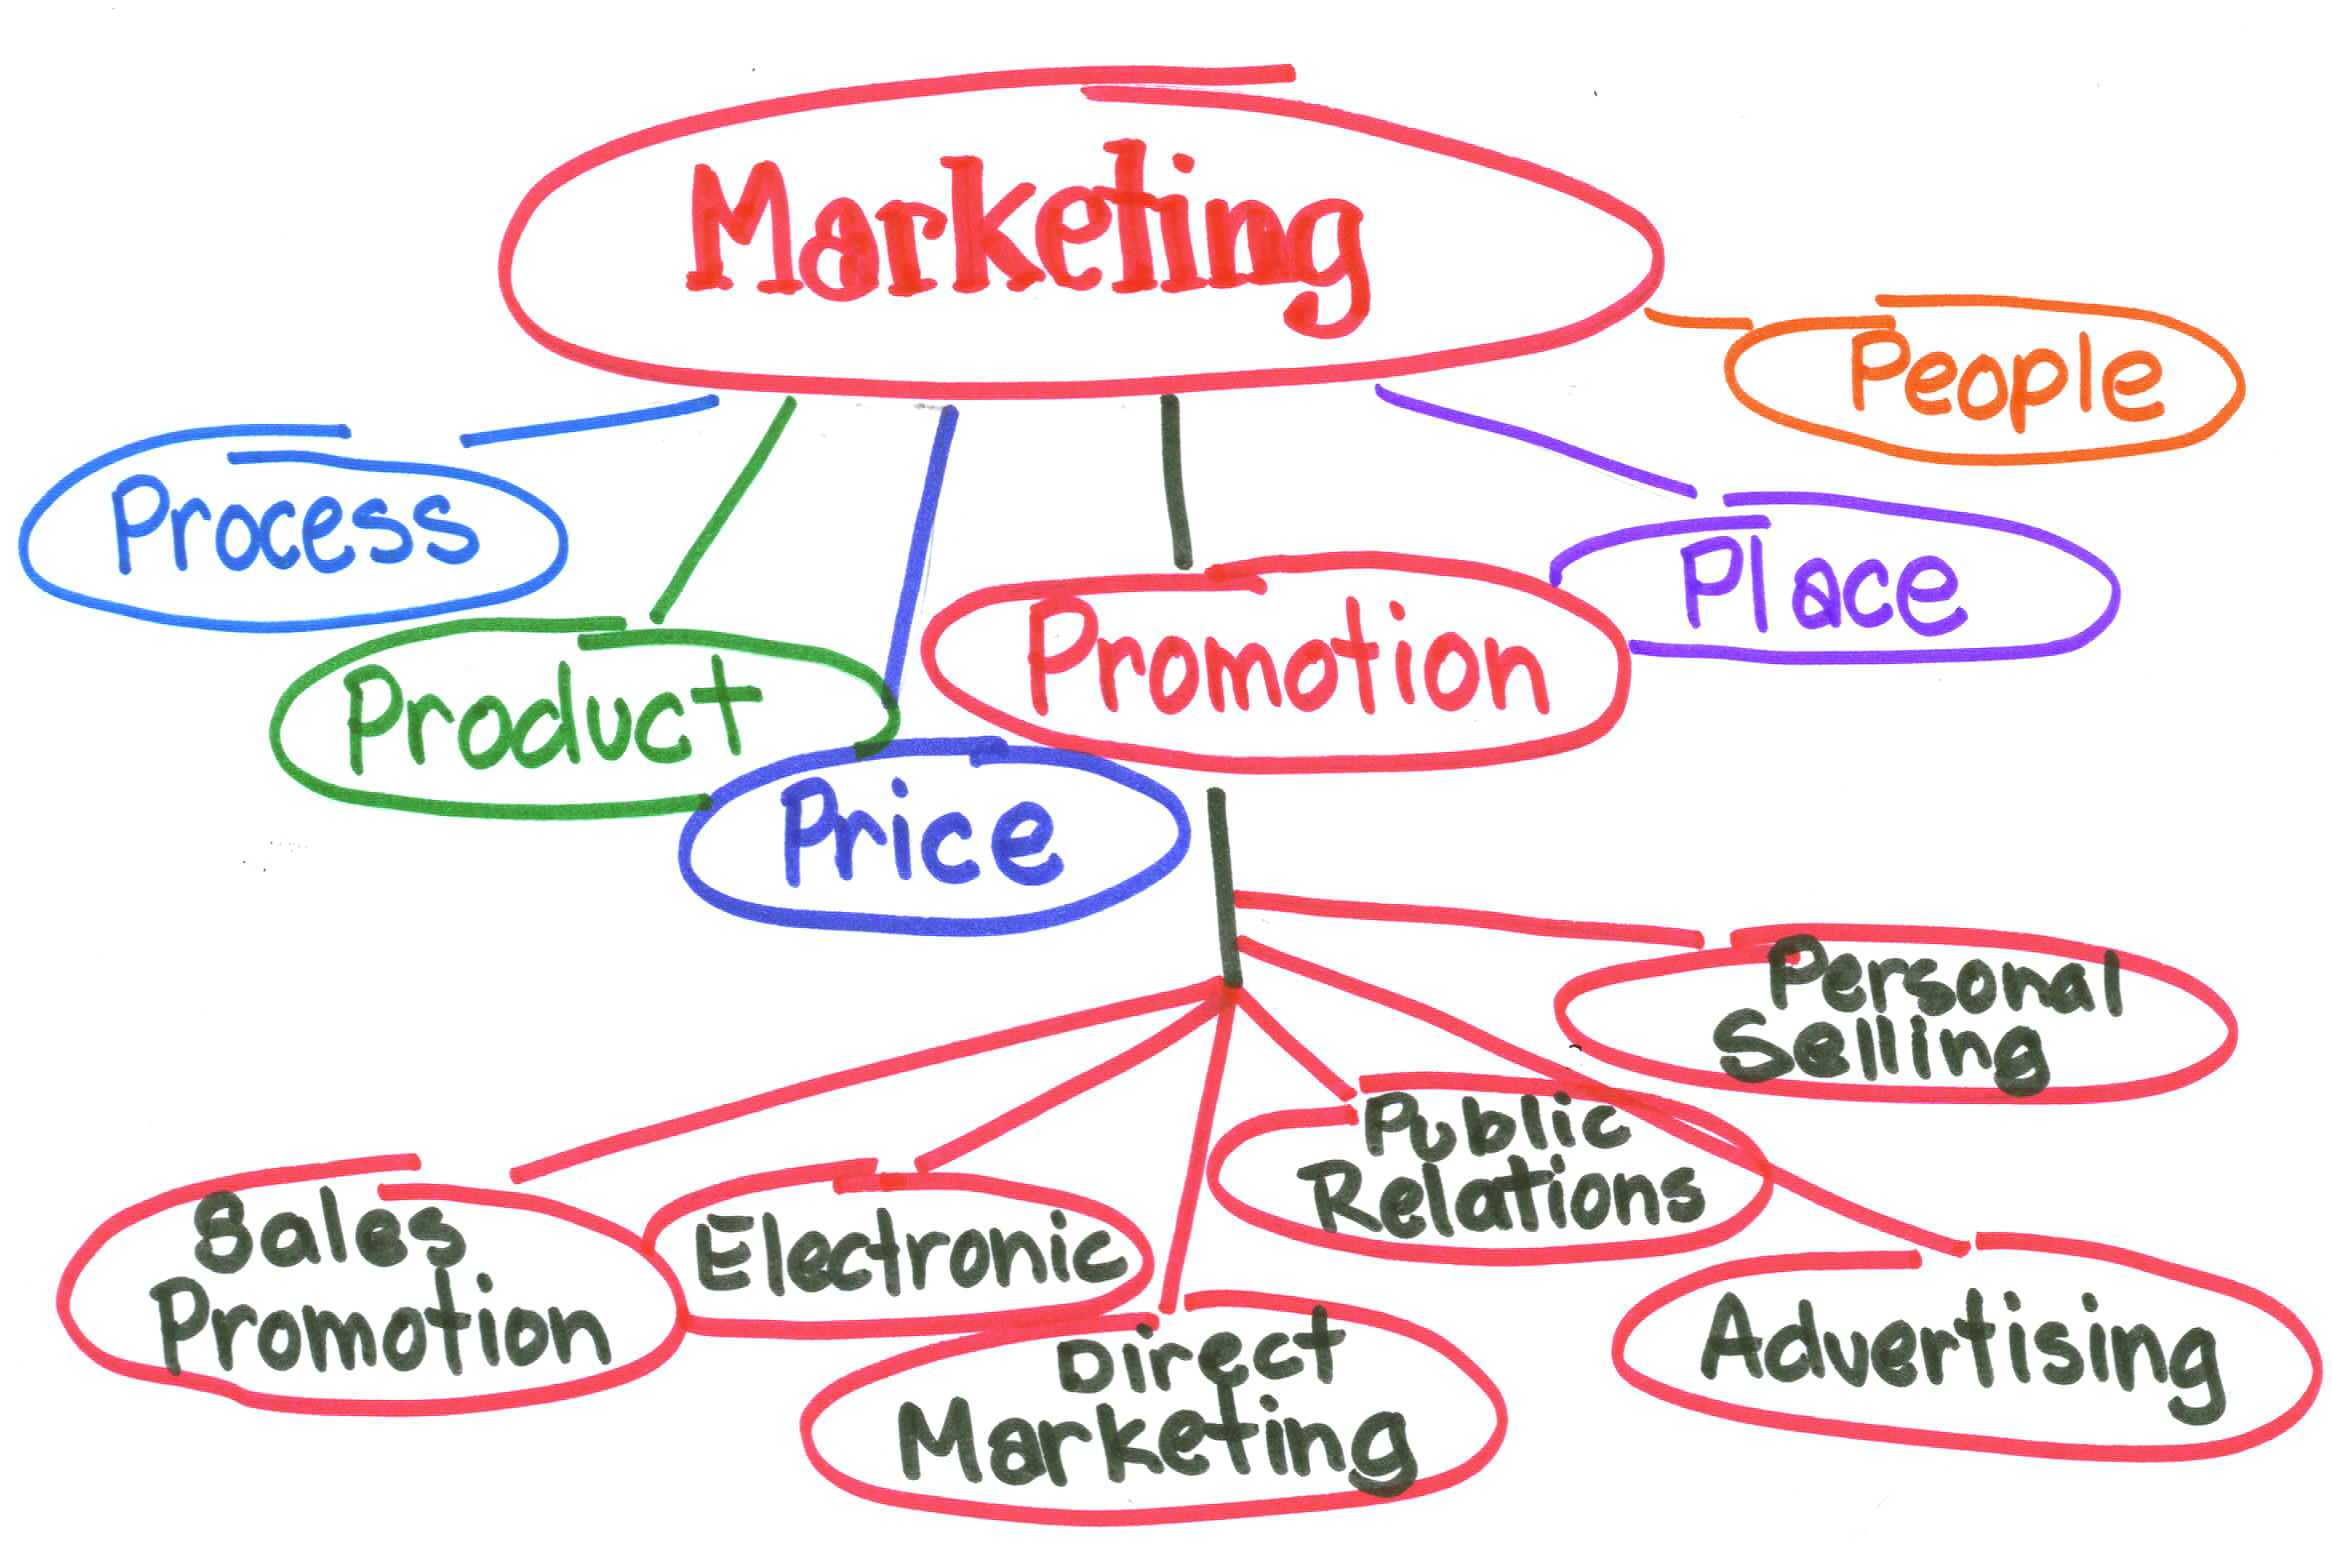 Marketing vs. Messaging